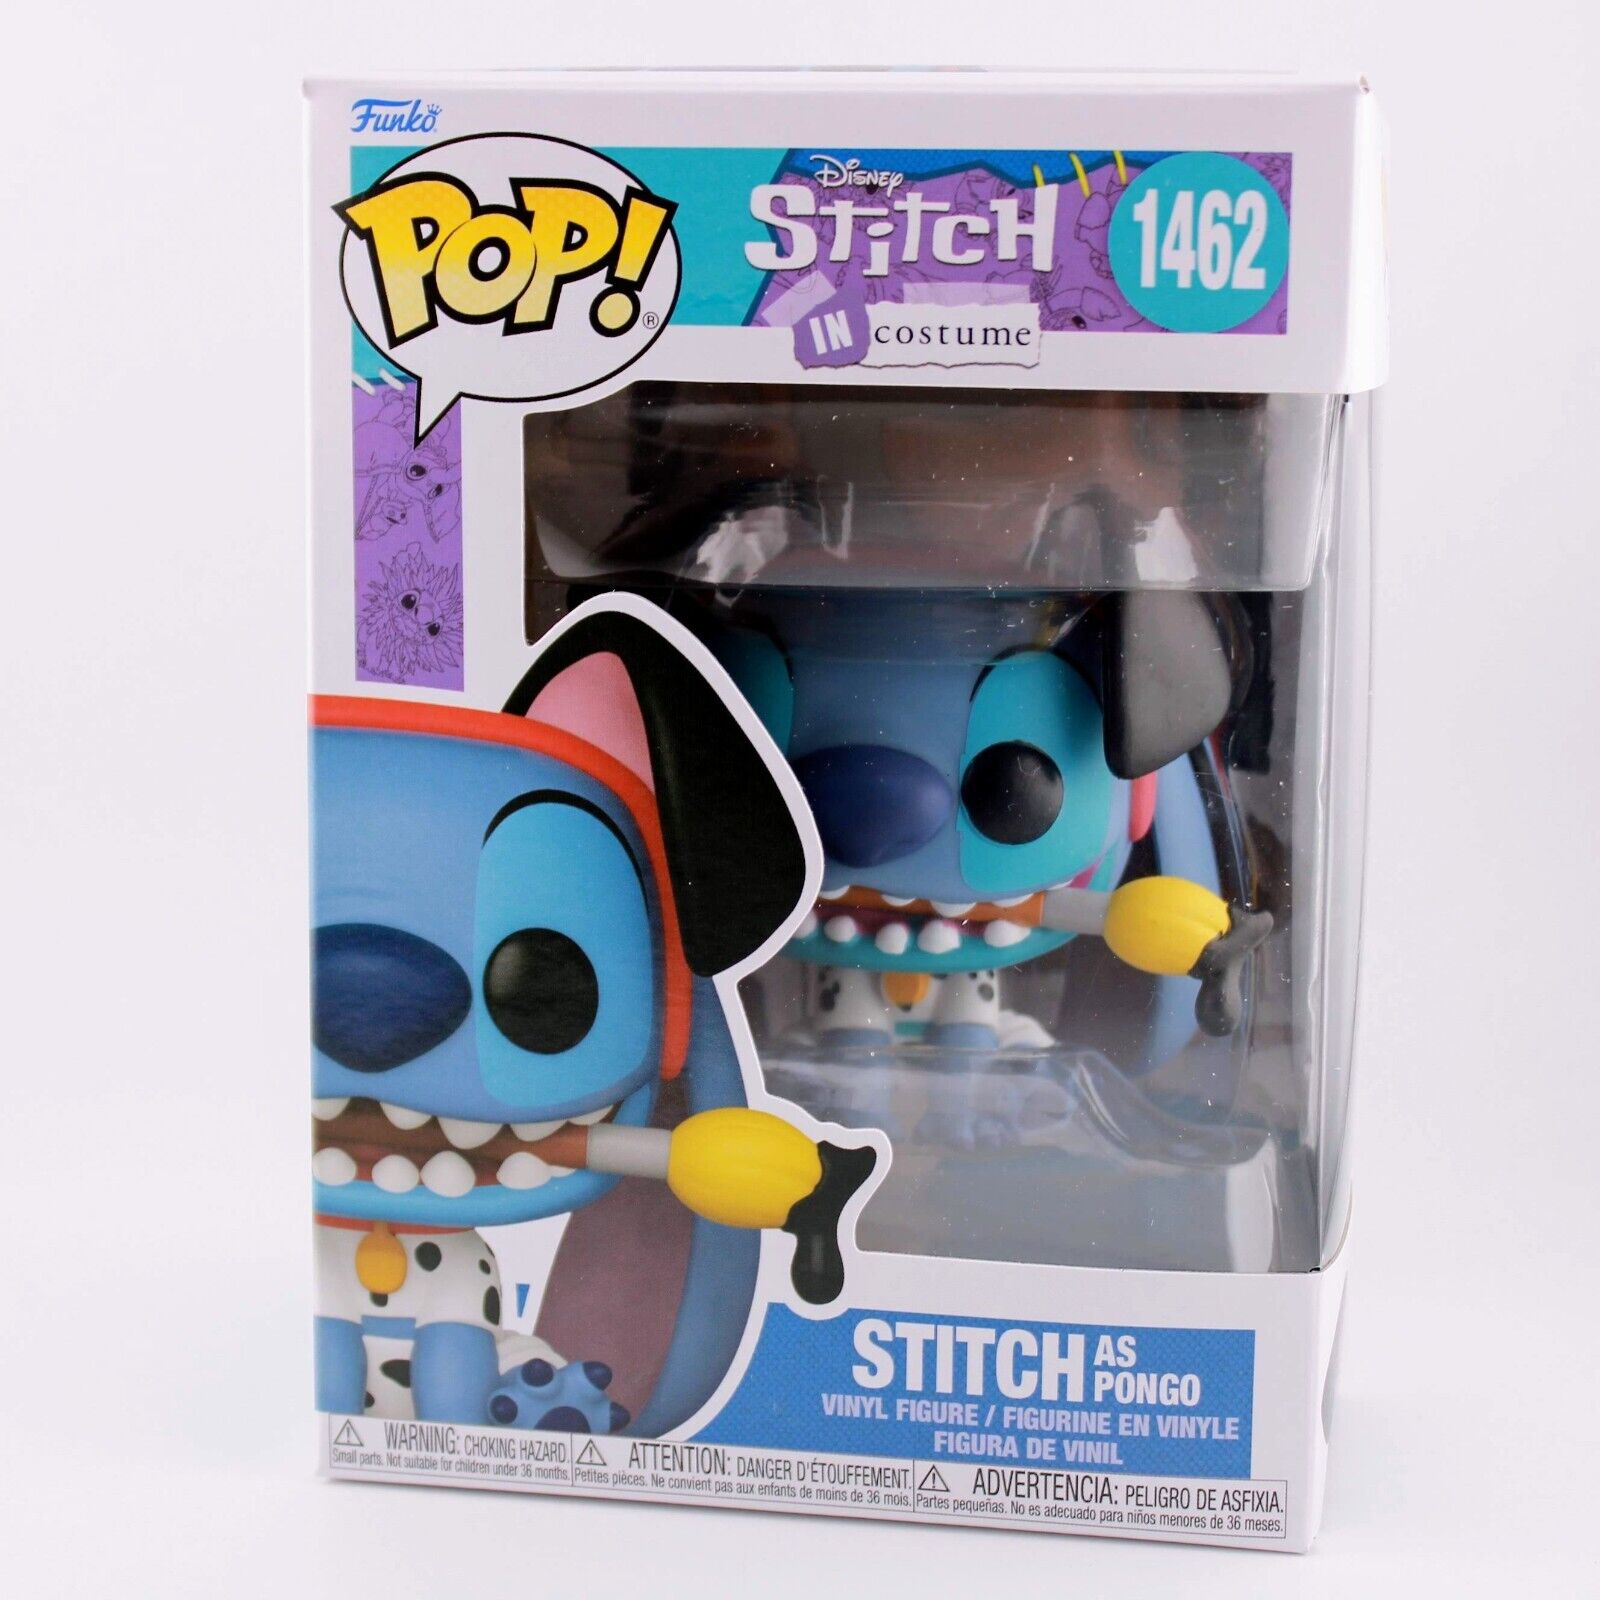 Funko Pop Disney Lilo & Stitch in Costume - Stitch as Pongo #1462